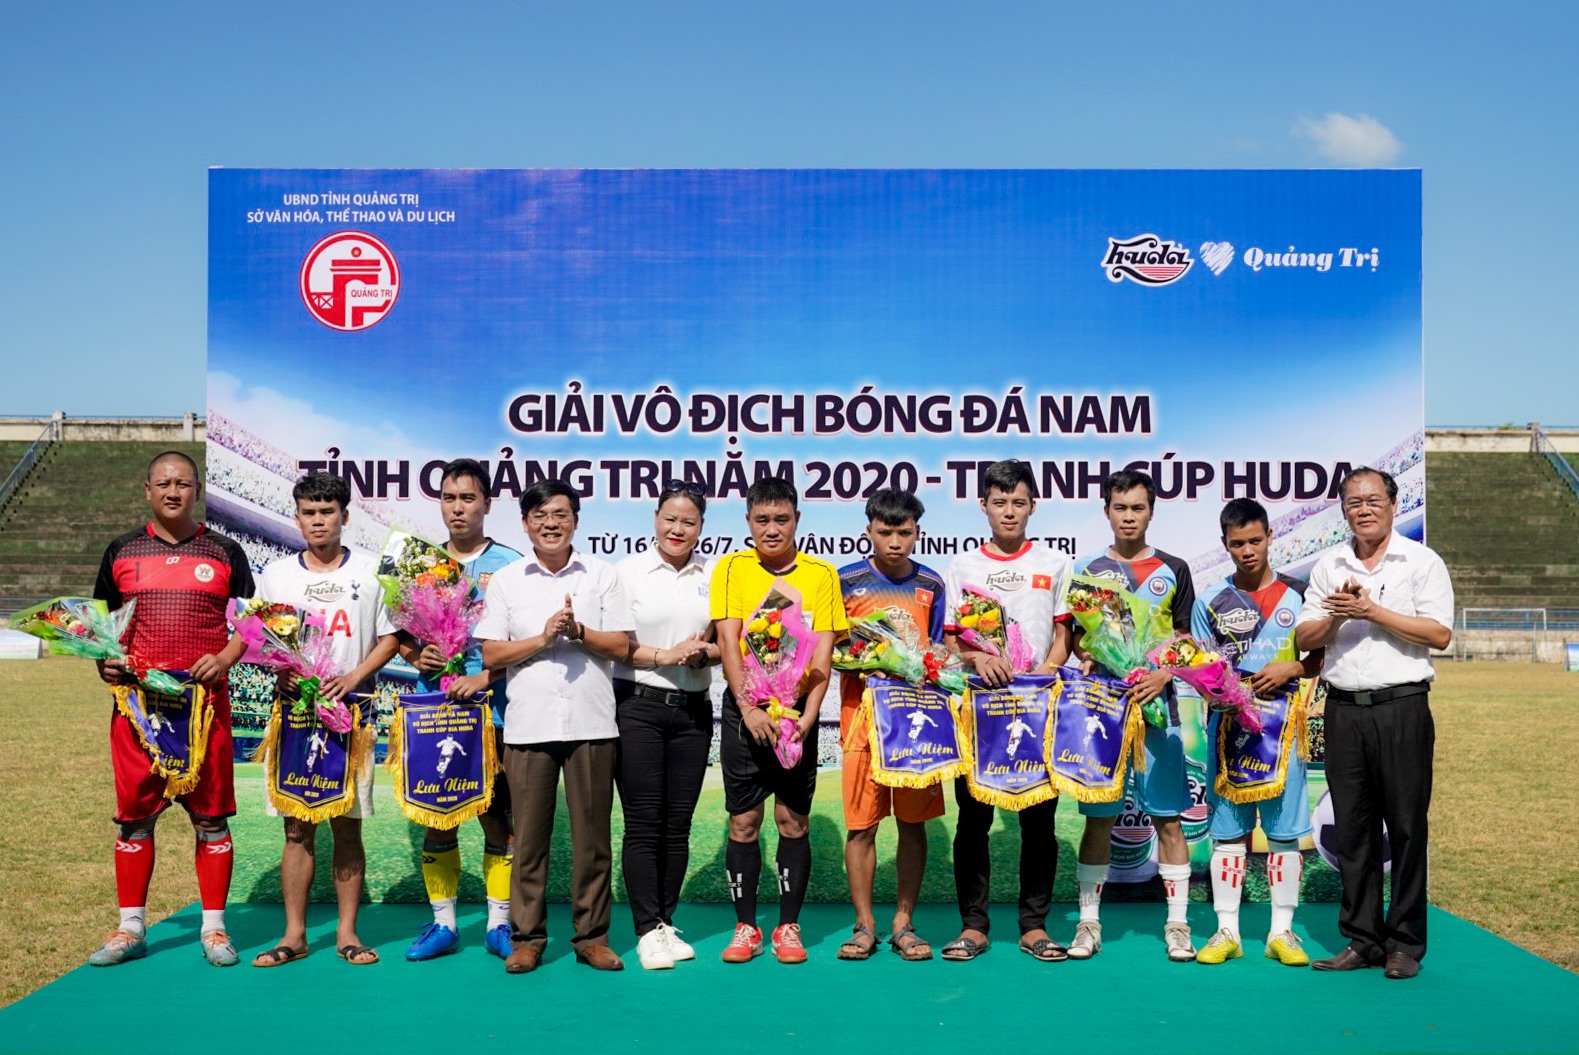 Huda Cup 2020 đã chính thức khởi tranh tháng 7 này tại SVĐ tỉnh Quảng Trị